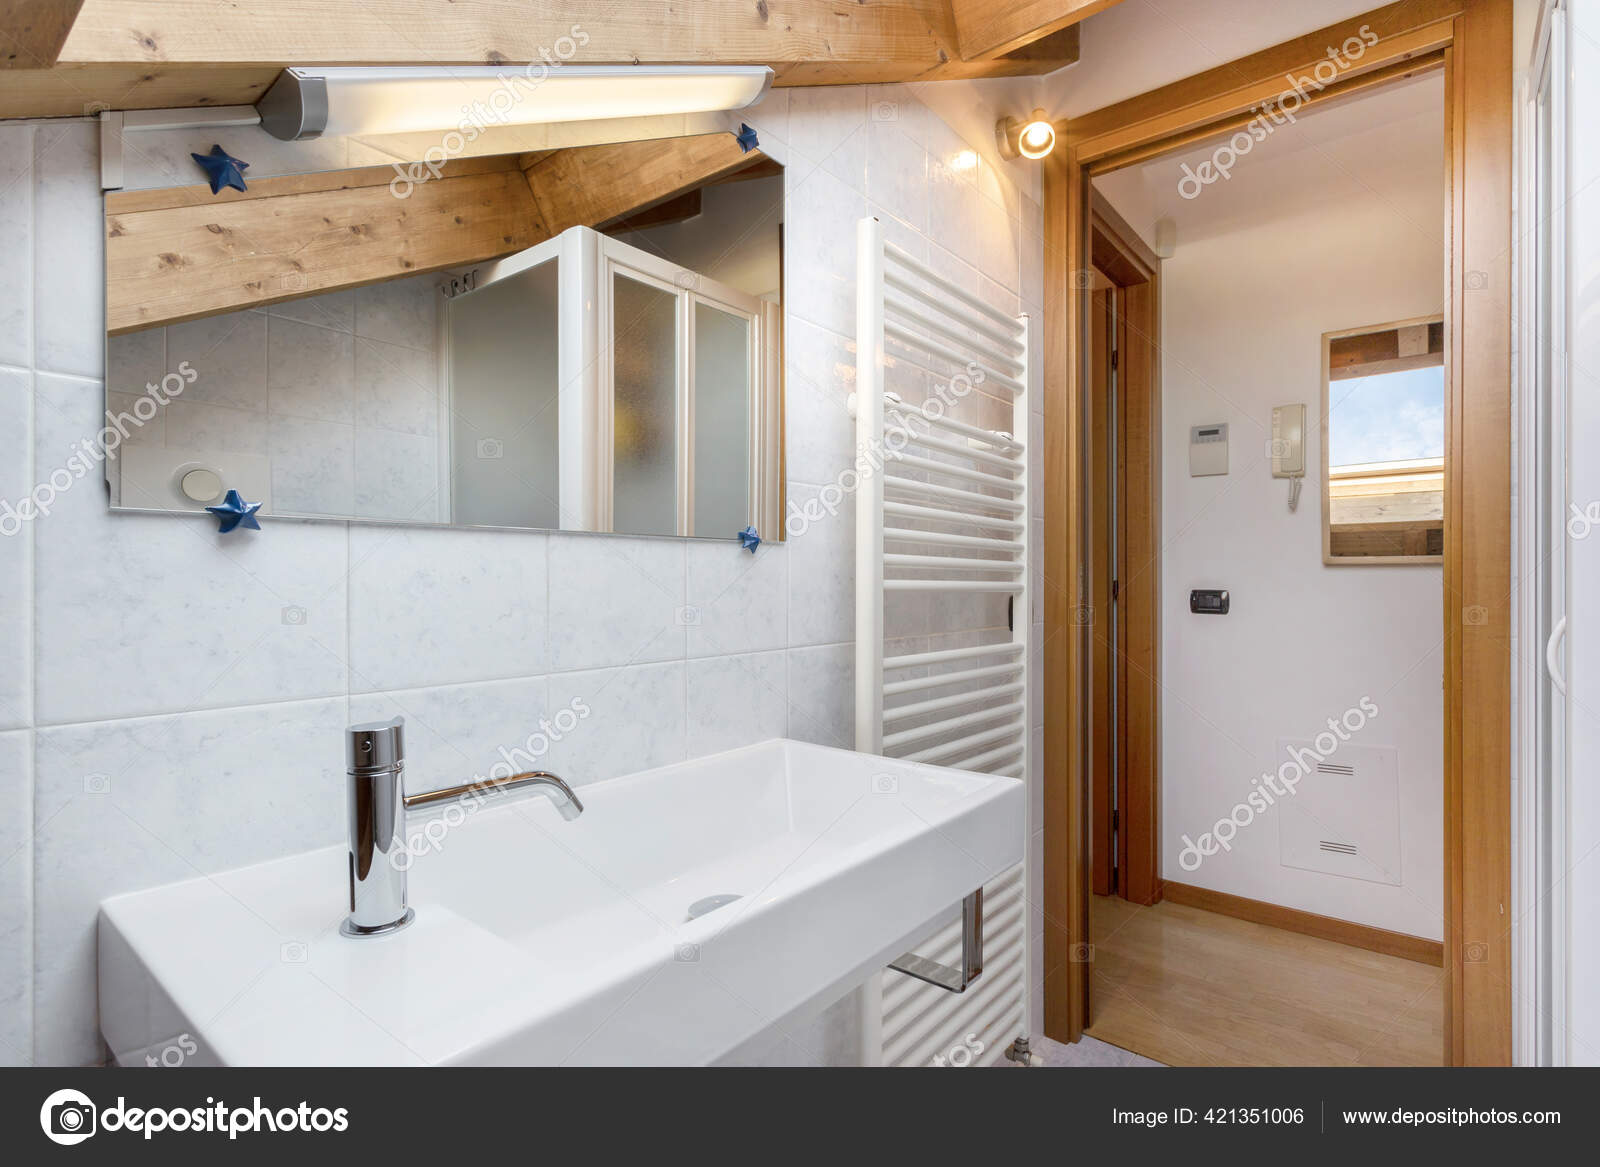 buitenaards wezen Fantasierijk Buigen Practical Cozy Bathroom Towel Radiator Toilet Cabinet Sink Roof Exposed  Stock Photo by ©germanopoli 421351006